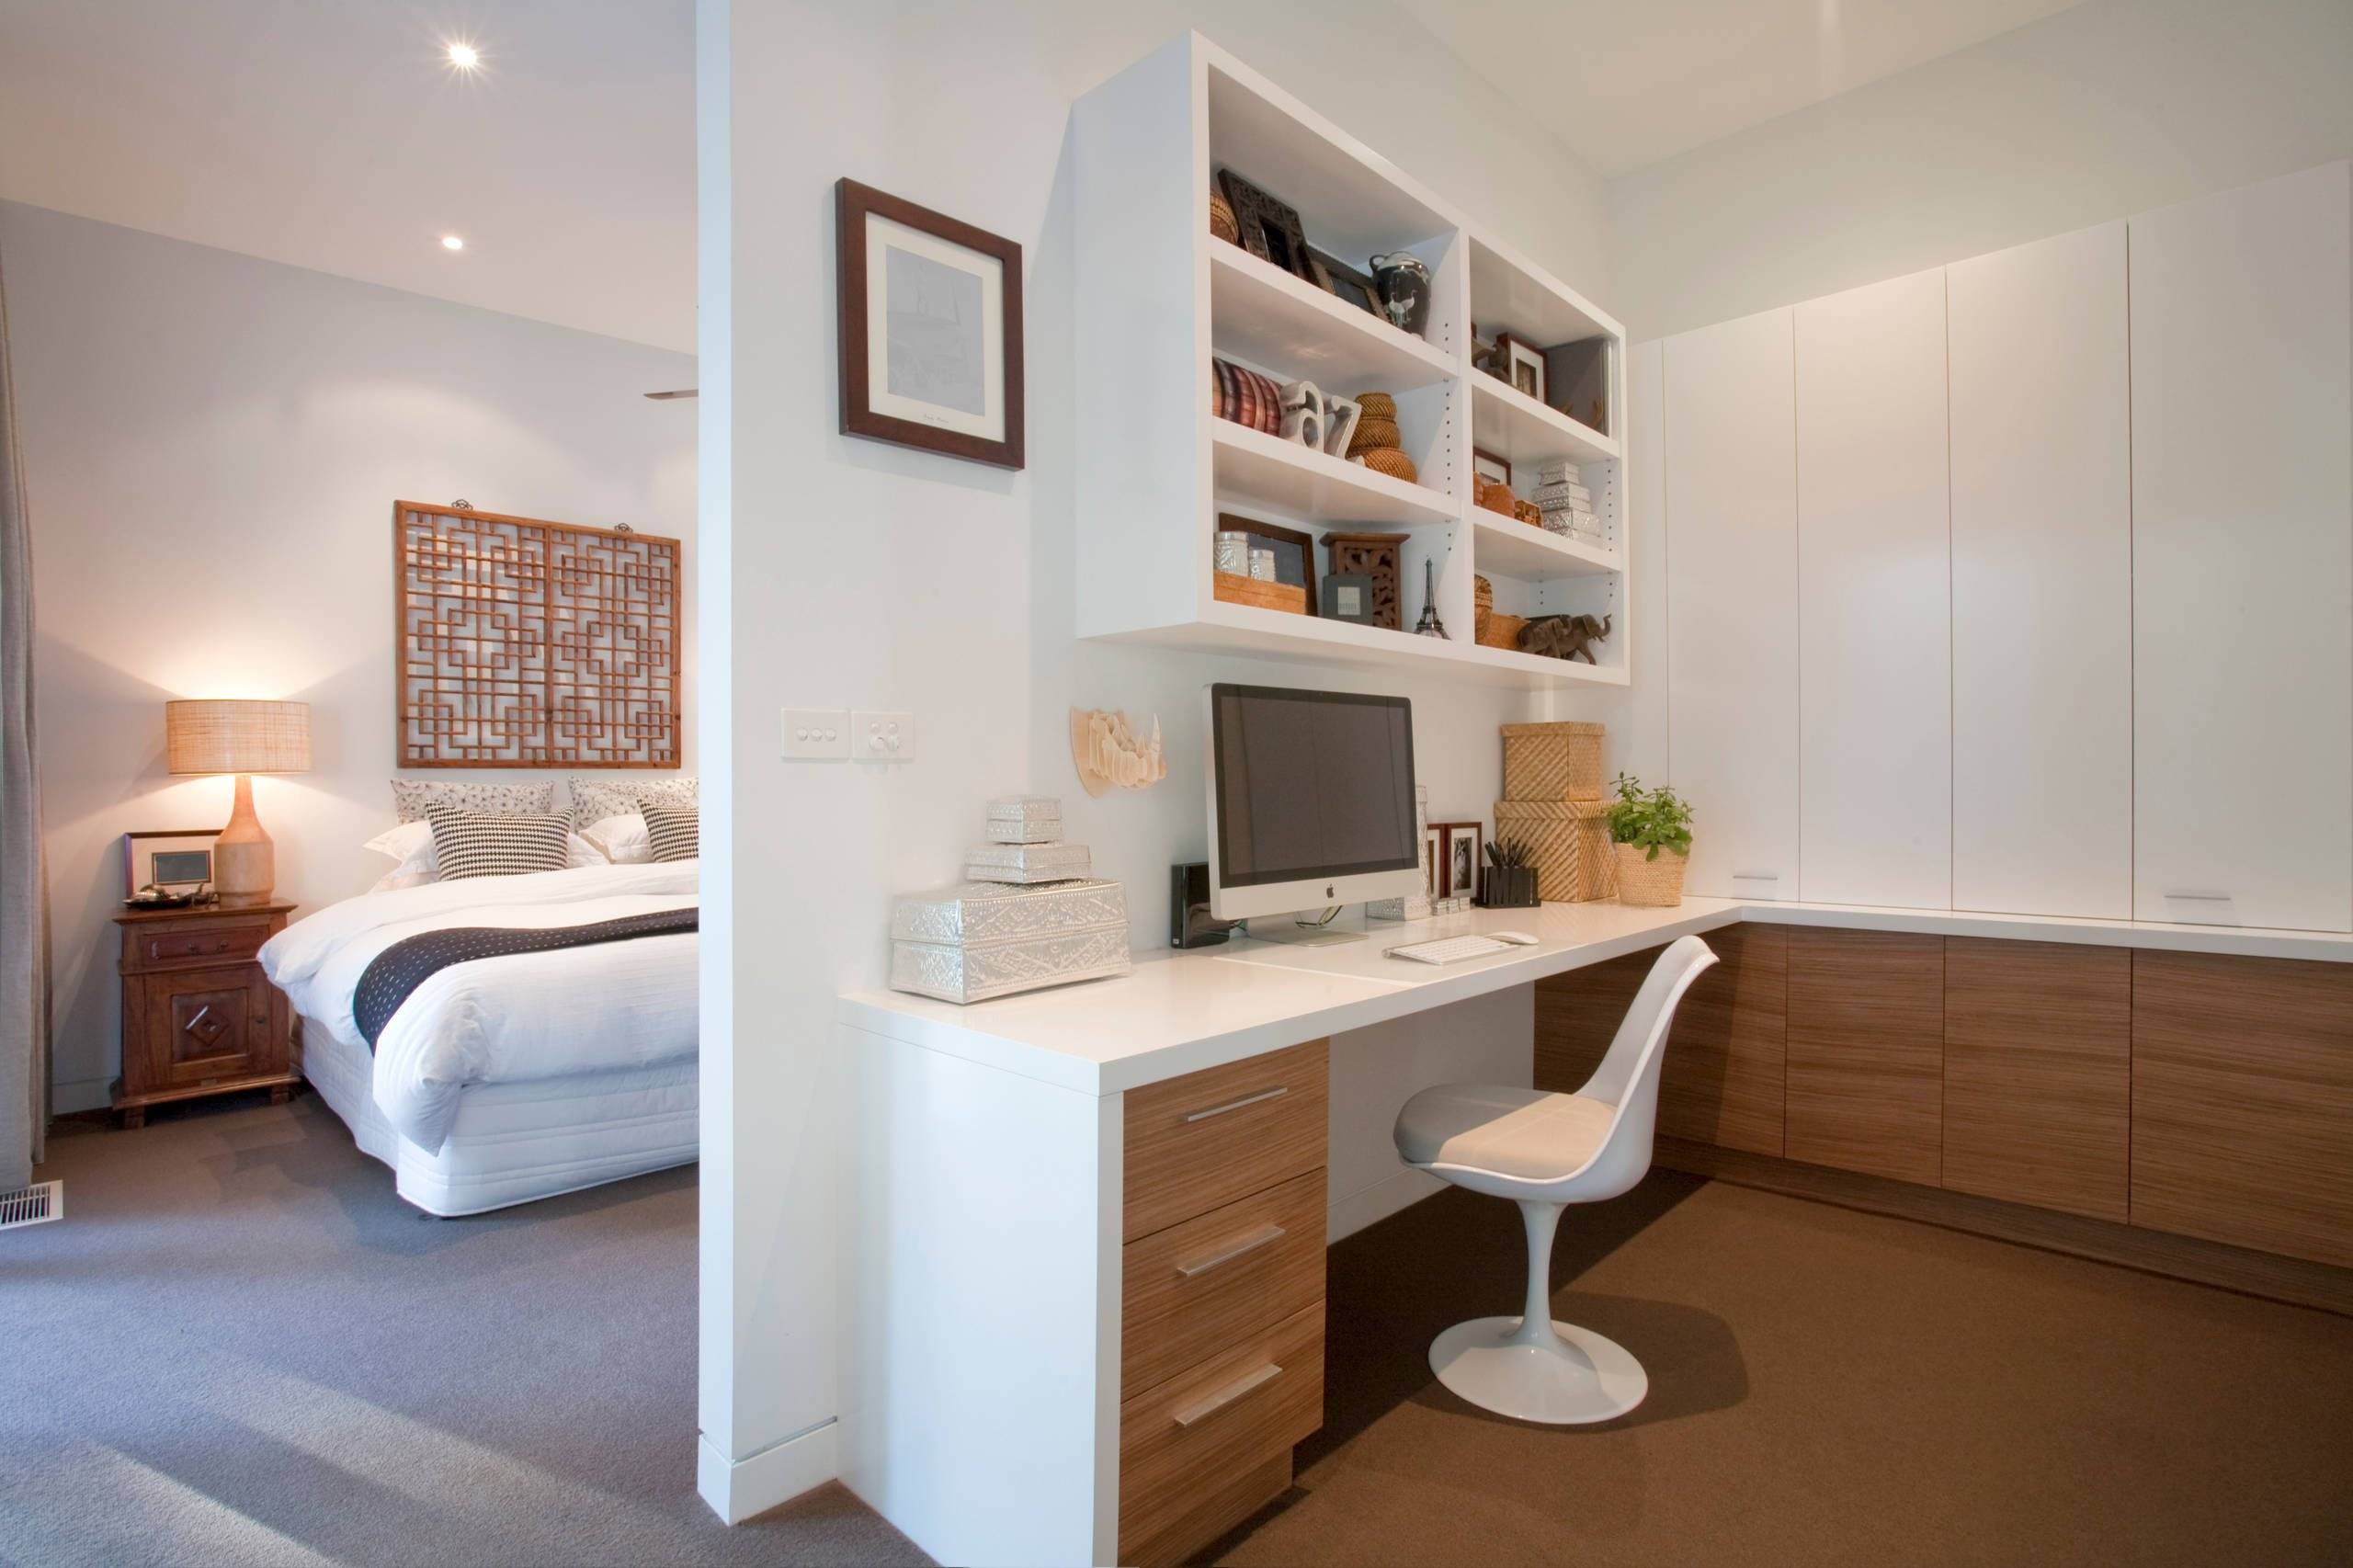 Кабинет-спальня в одной комнате - секреты дизайна интерьера